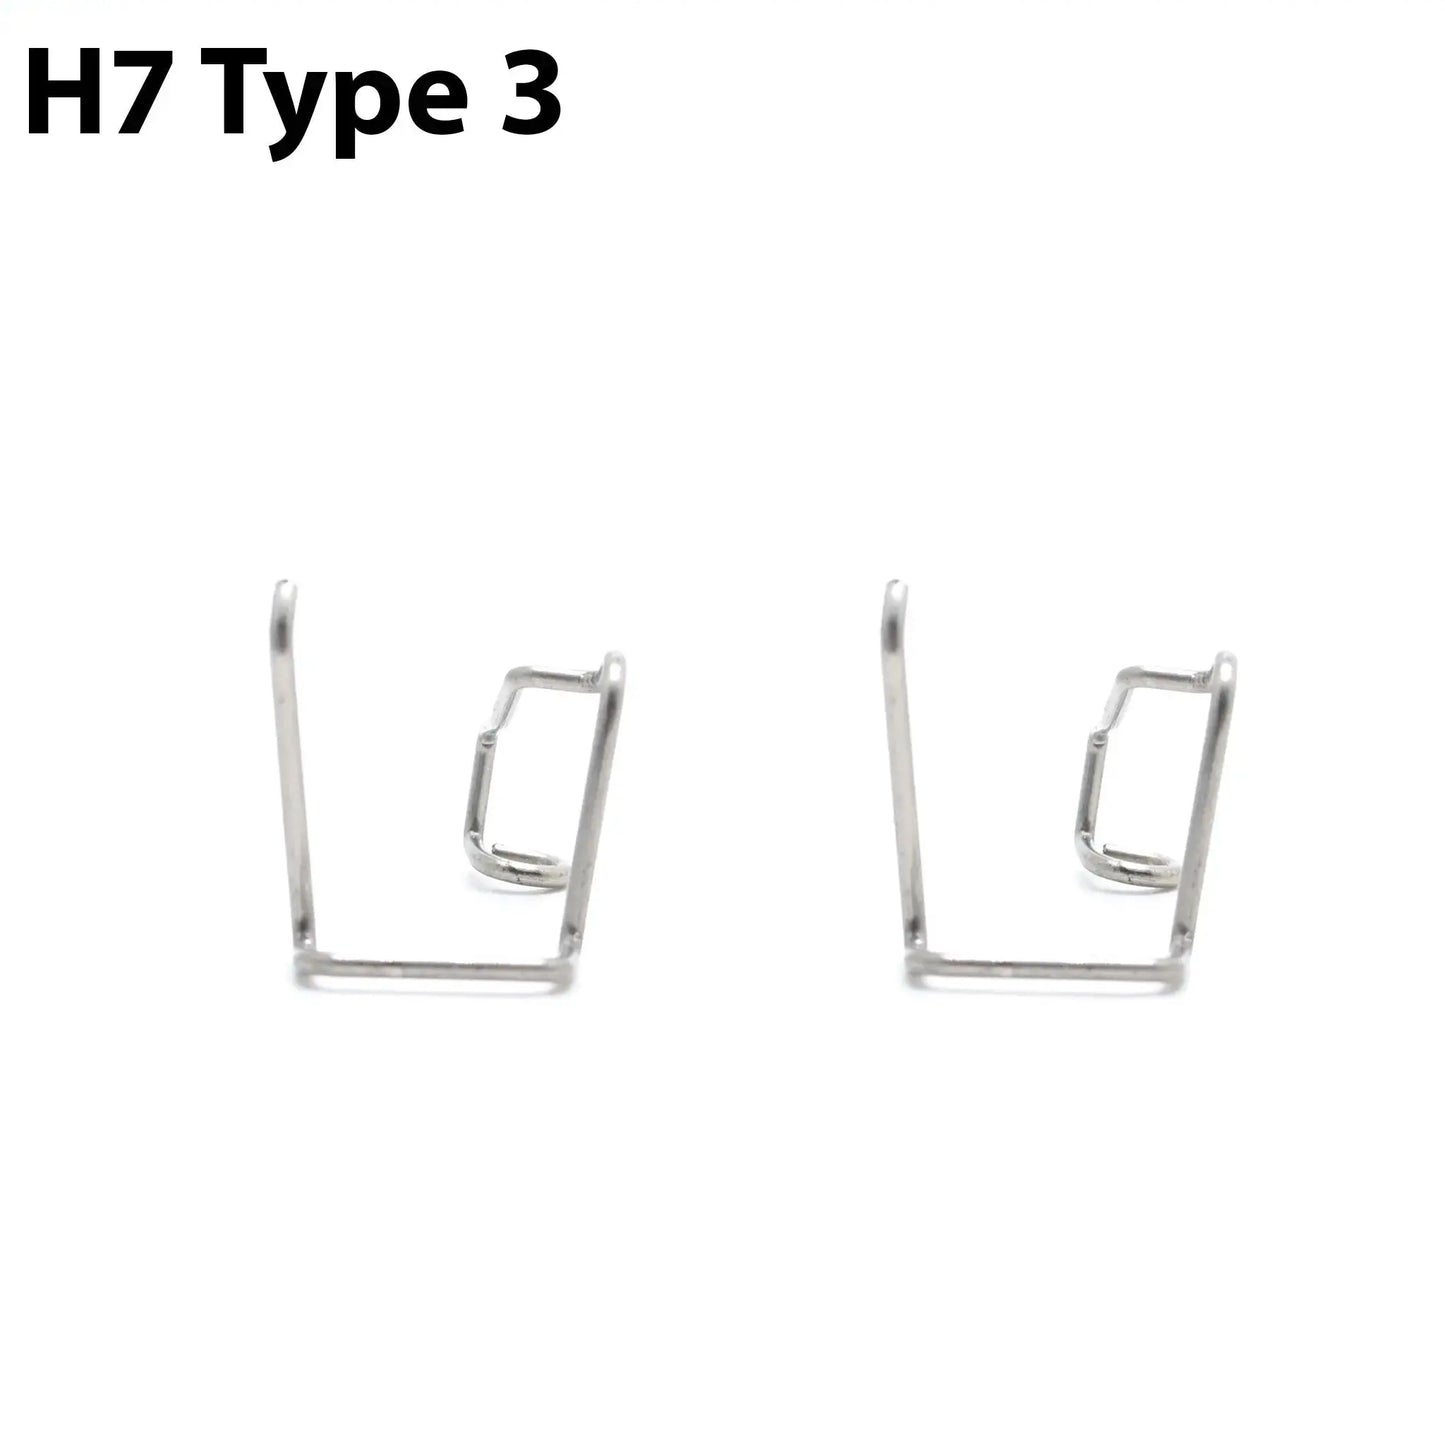 Pæreholder: Halogen pærer H4 og H7 9rds.no